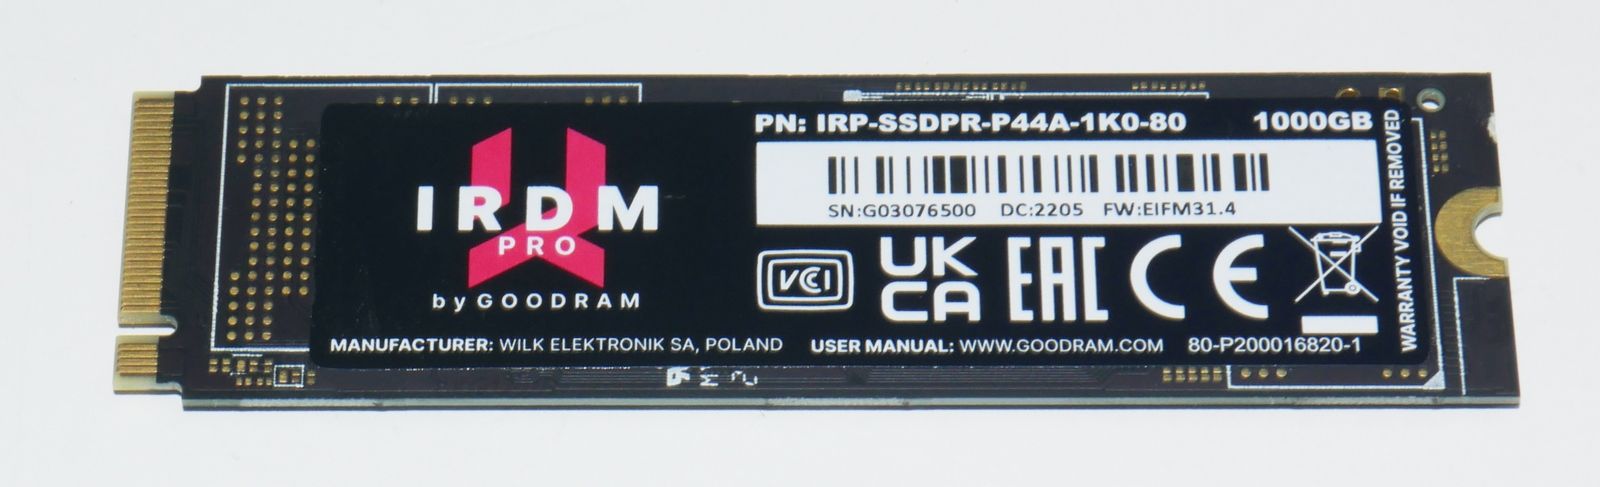 Review IRDM PRO M.2 SSD 1TB 196